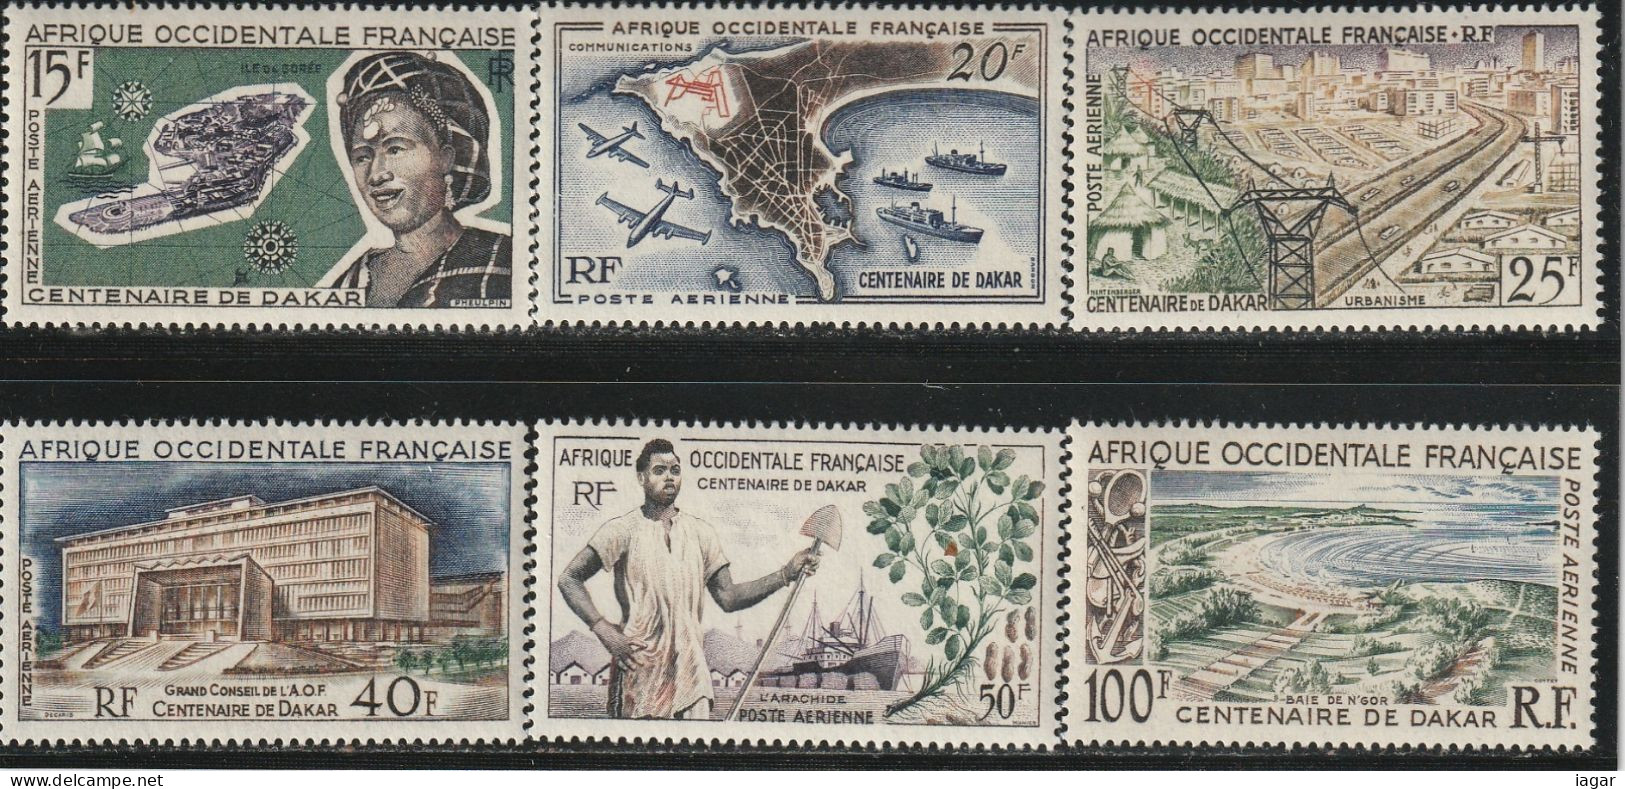 AFRIQUE OCCIDENTALE Française 1958  -  CENTENAIRE DE DAKAR, SUJETS DIVERS  6v - Altri - Africa